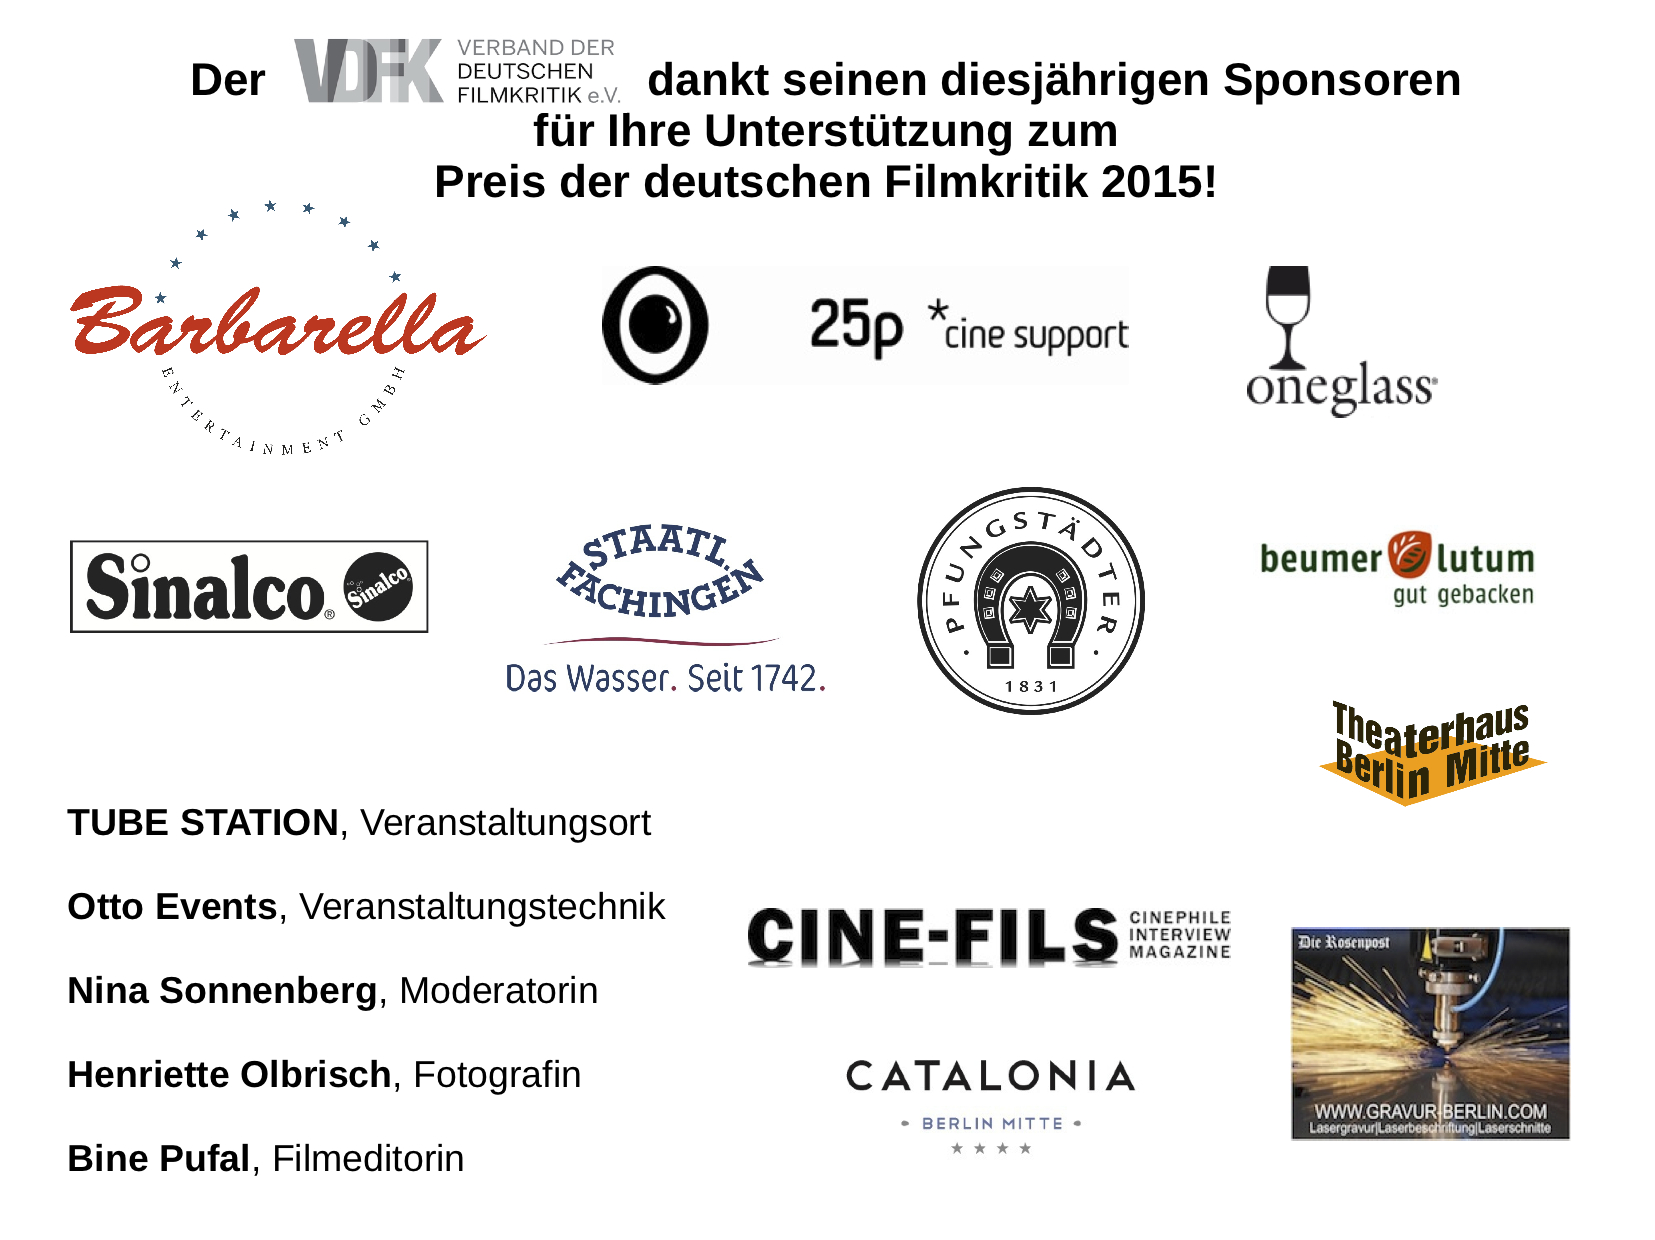 Sponsoren Preis der deutschen Filmkritik 2015